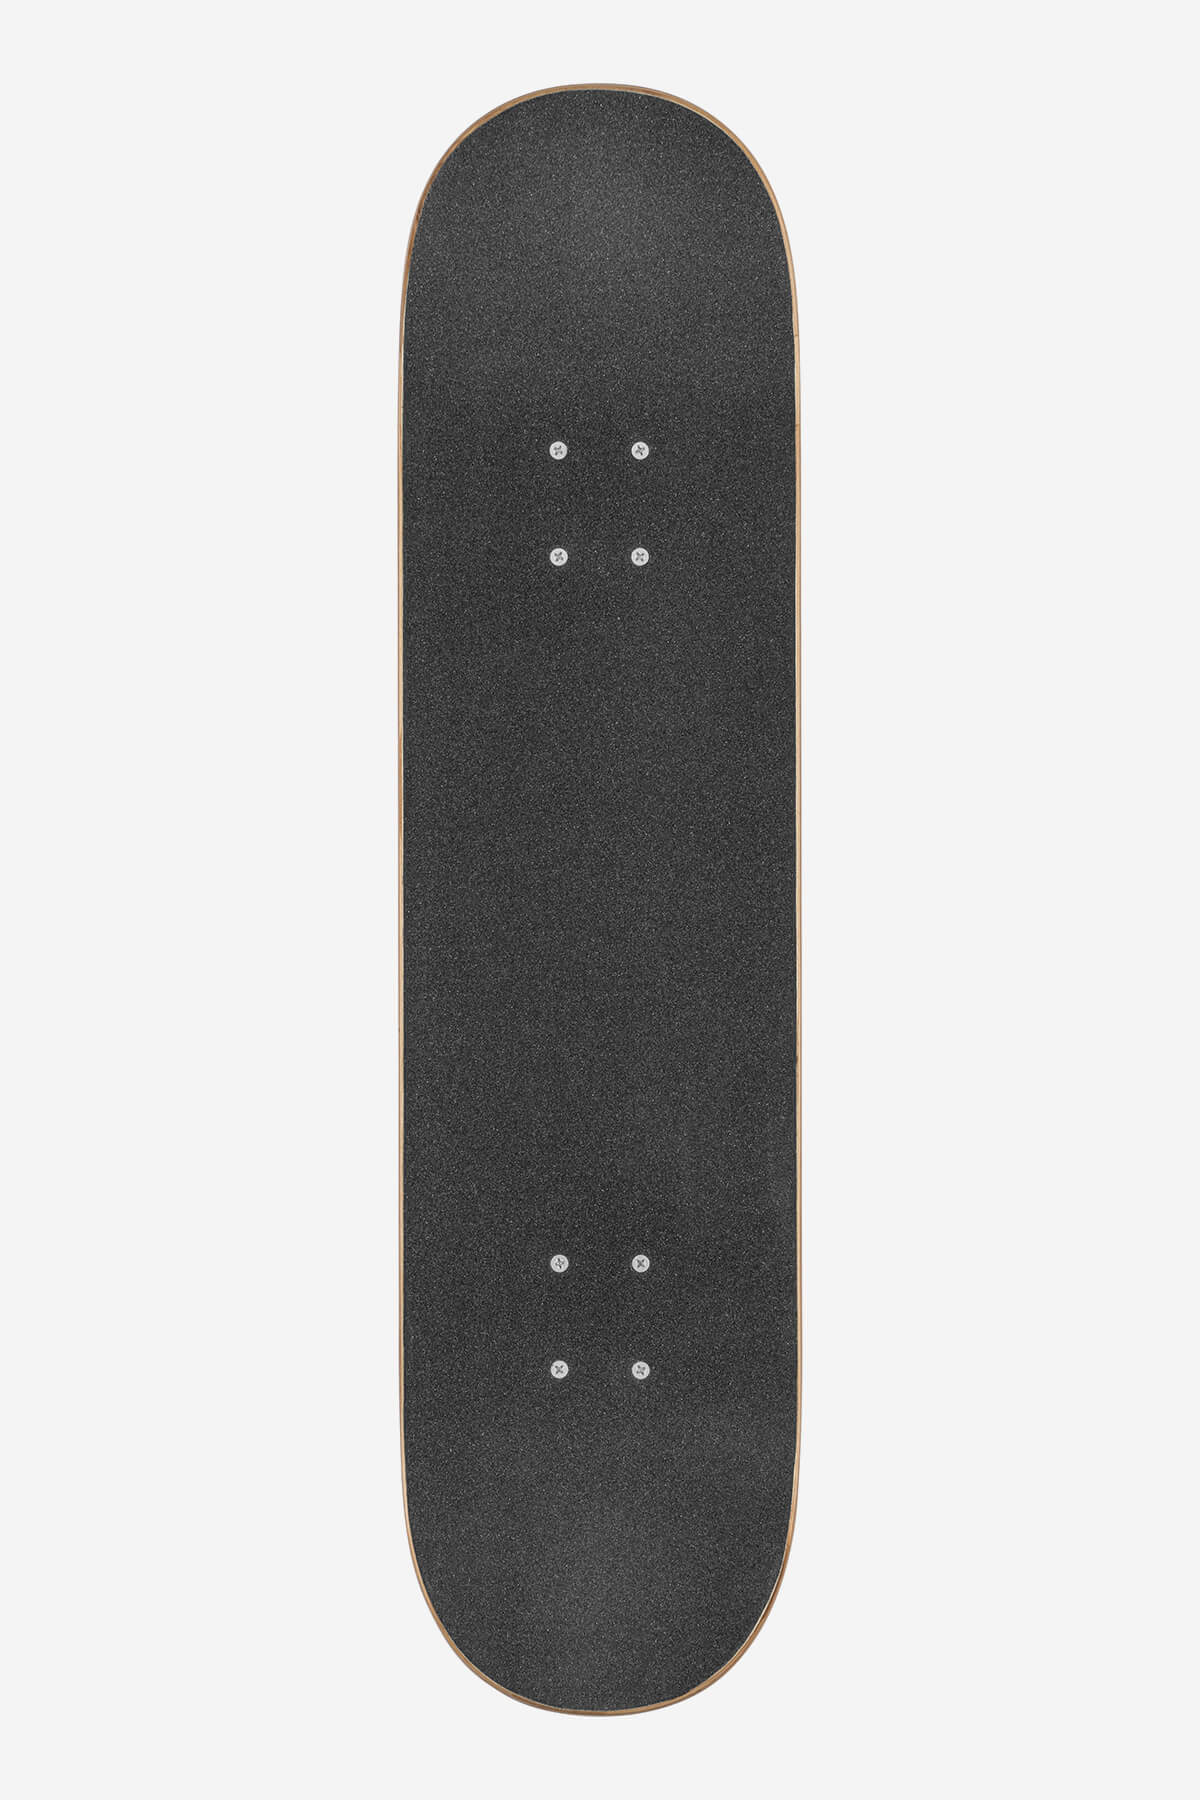 Globe - G0 Fubar - White/Negro - 8.0" Completo Skateboard